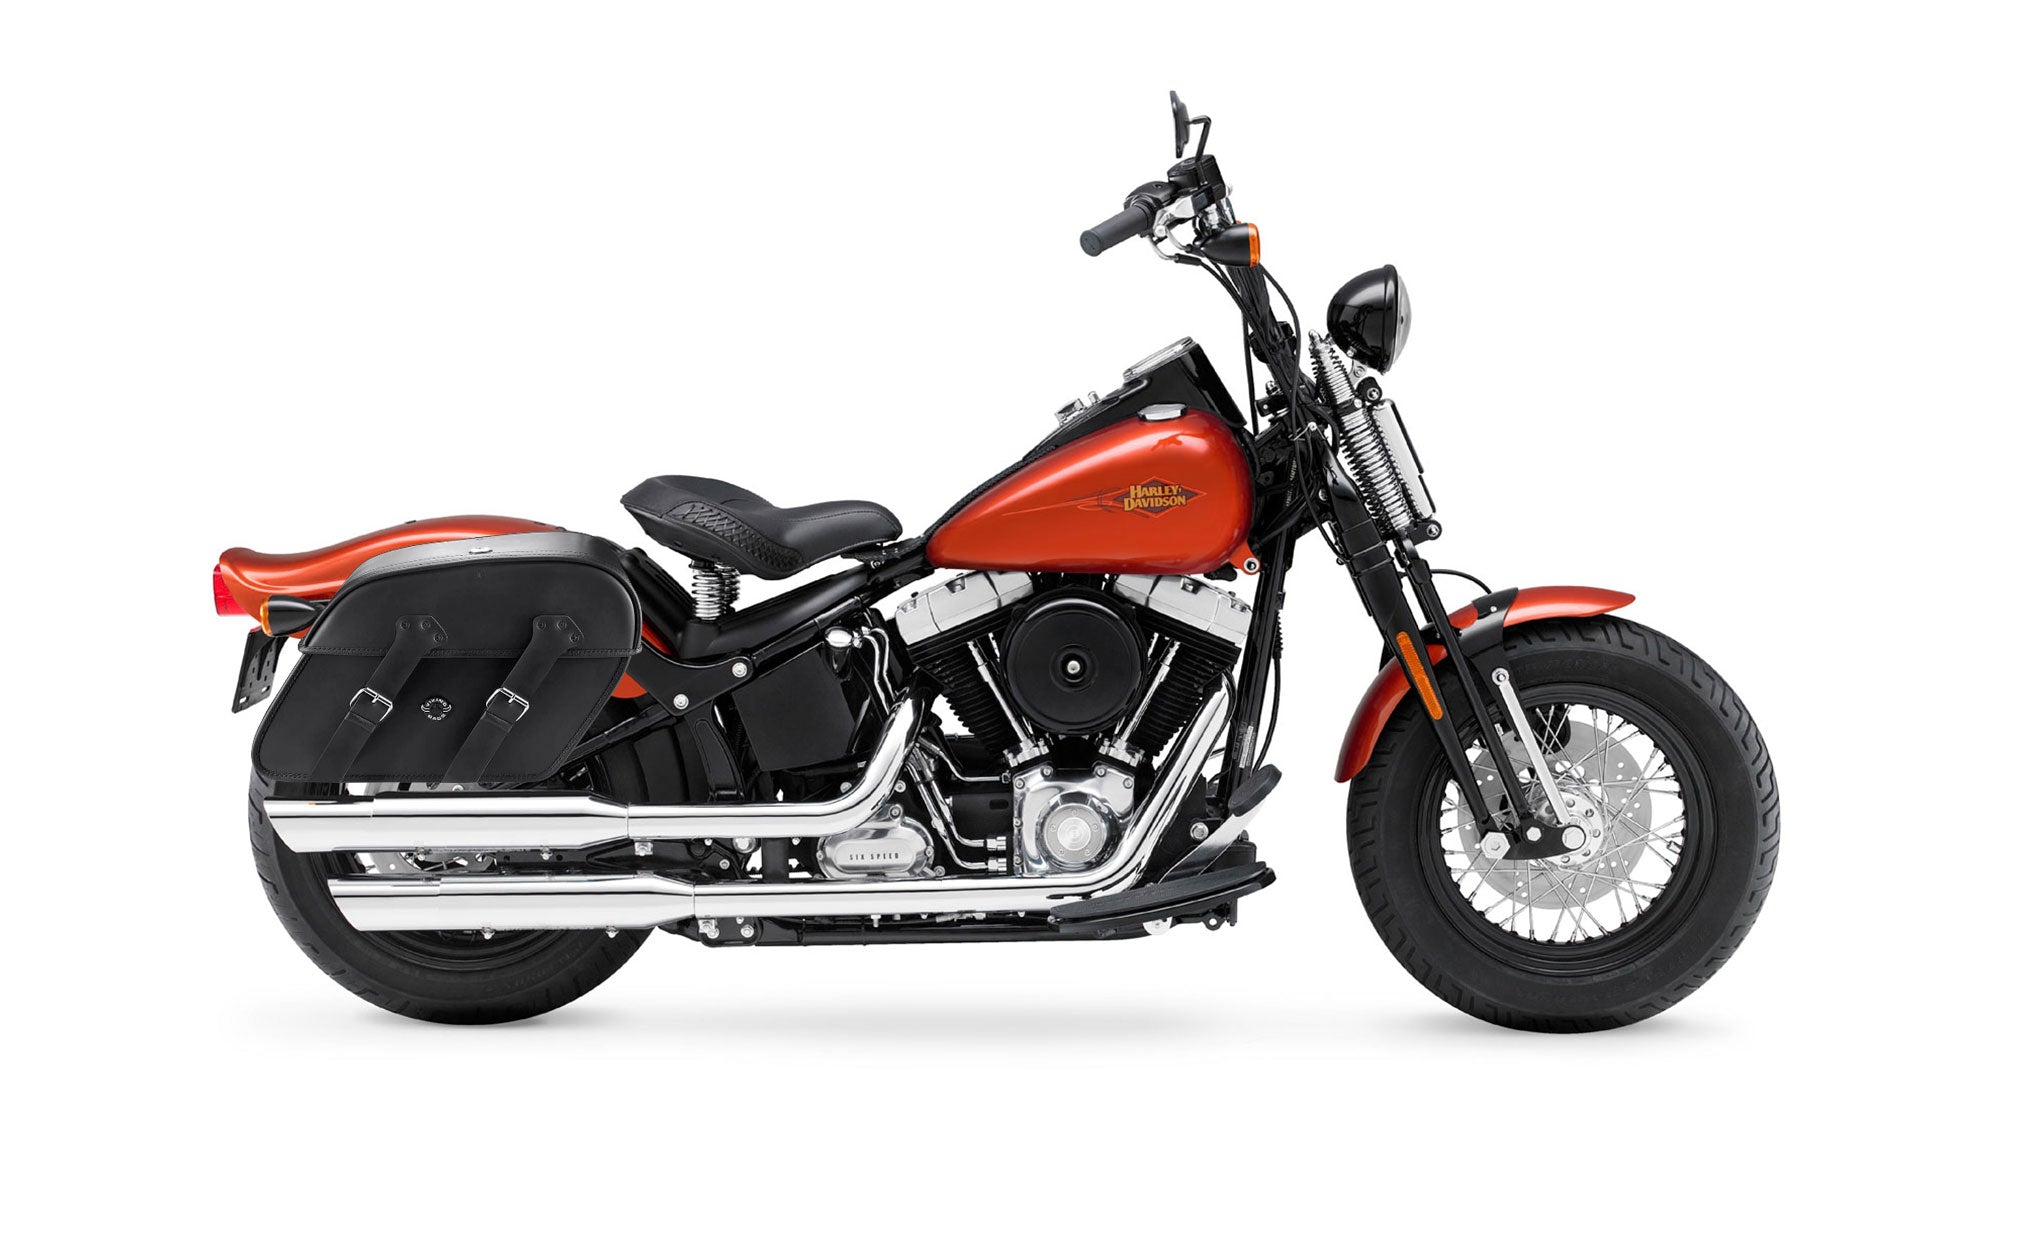 Viking Raven Extra Large Leather Motorcycle Saddlebags For Harley Softail Cross Bones Flstsb on Bike Photo @expand